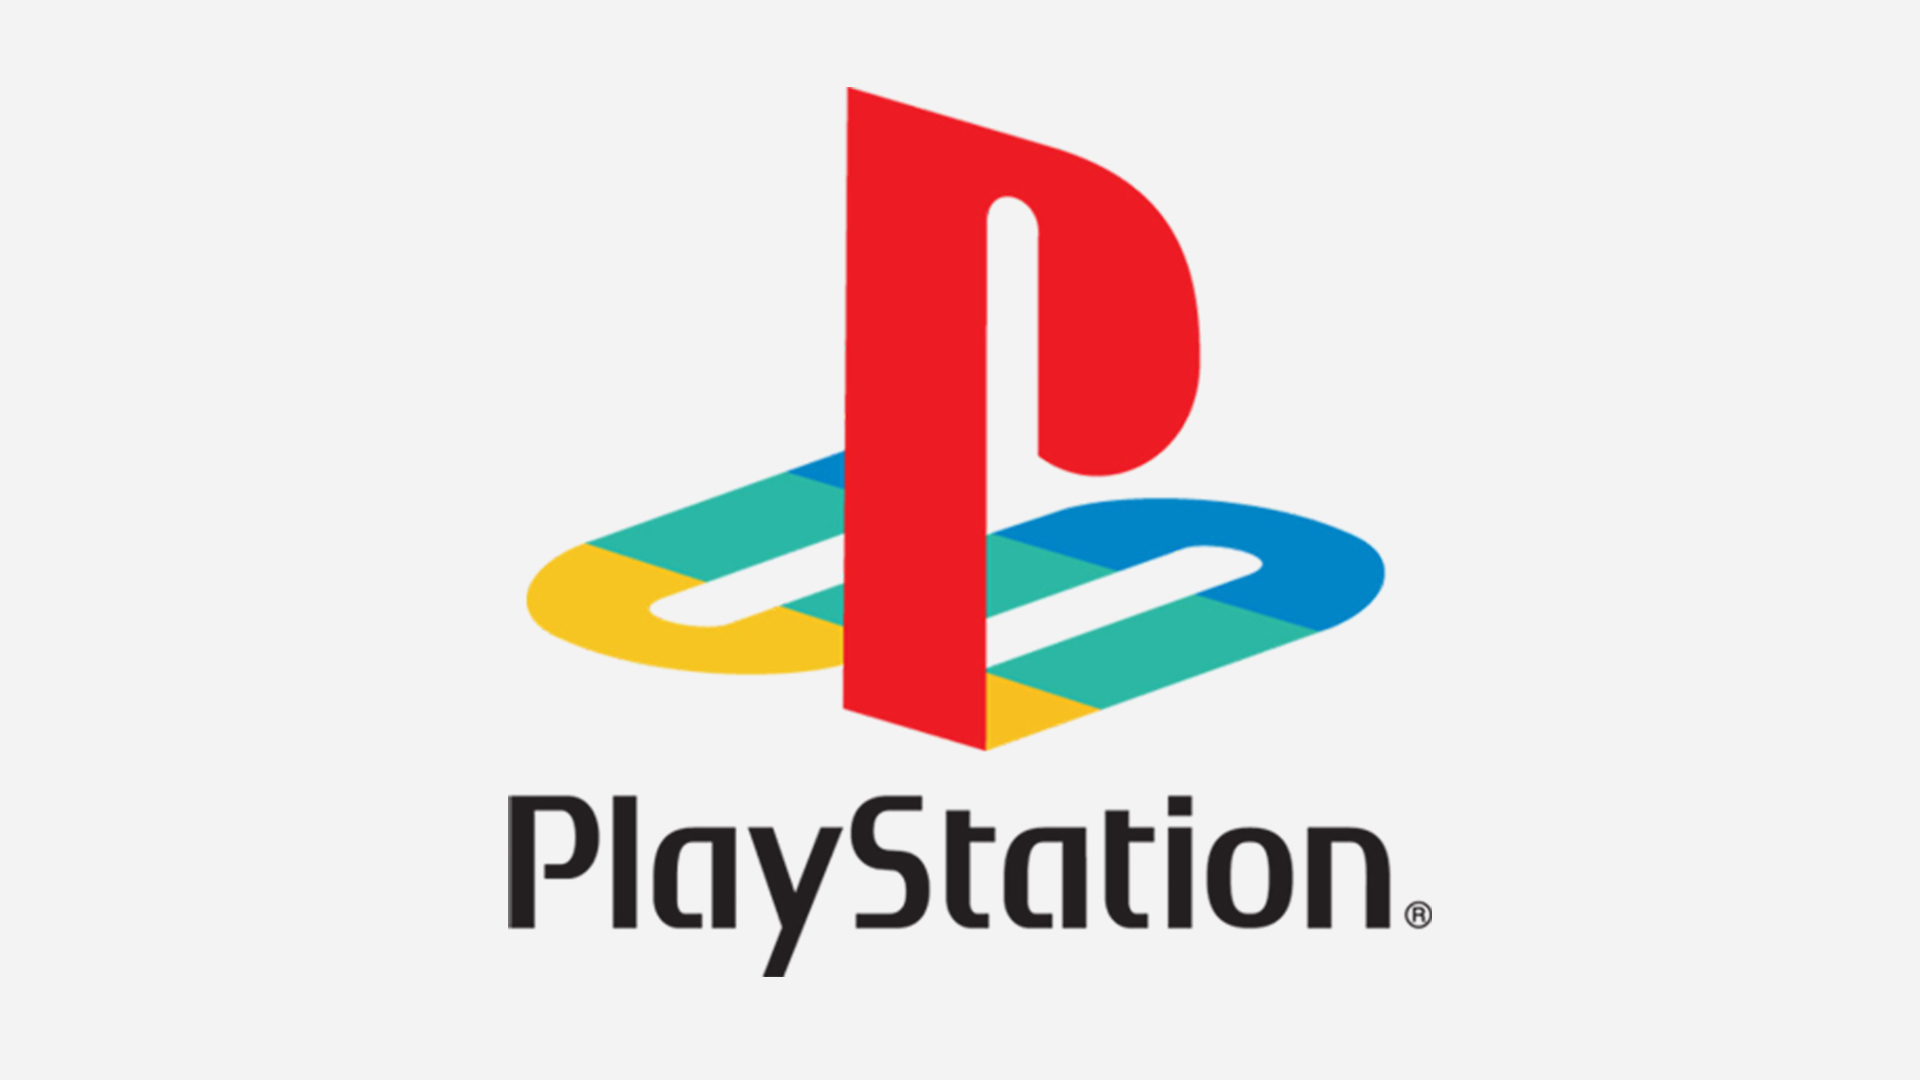 Sony Playstation Logo - KibrisPDR